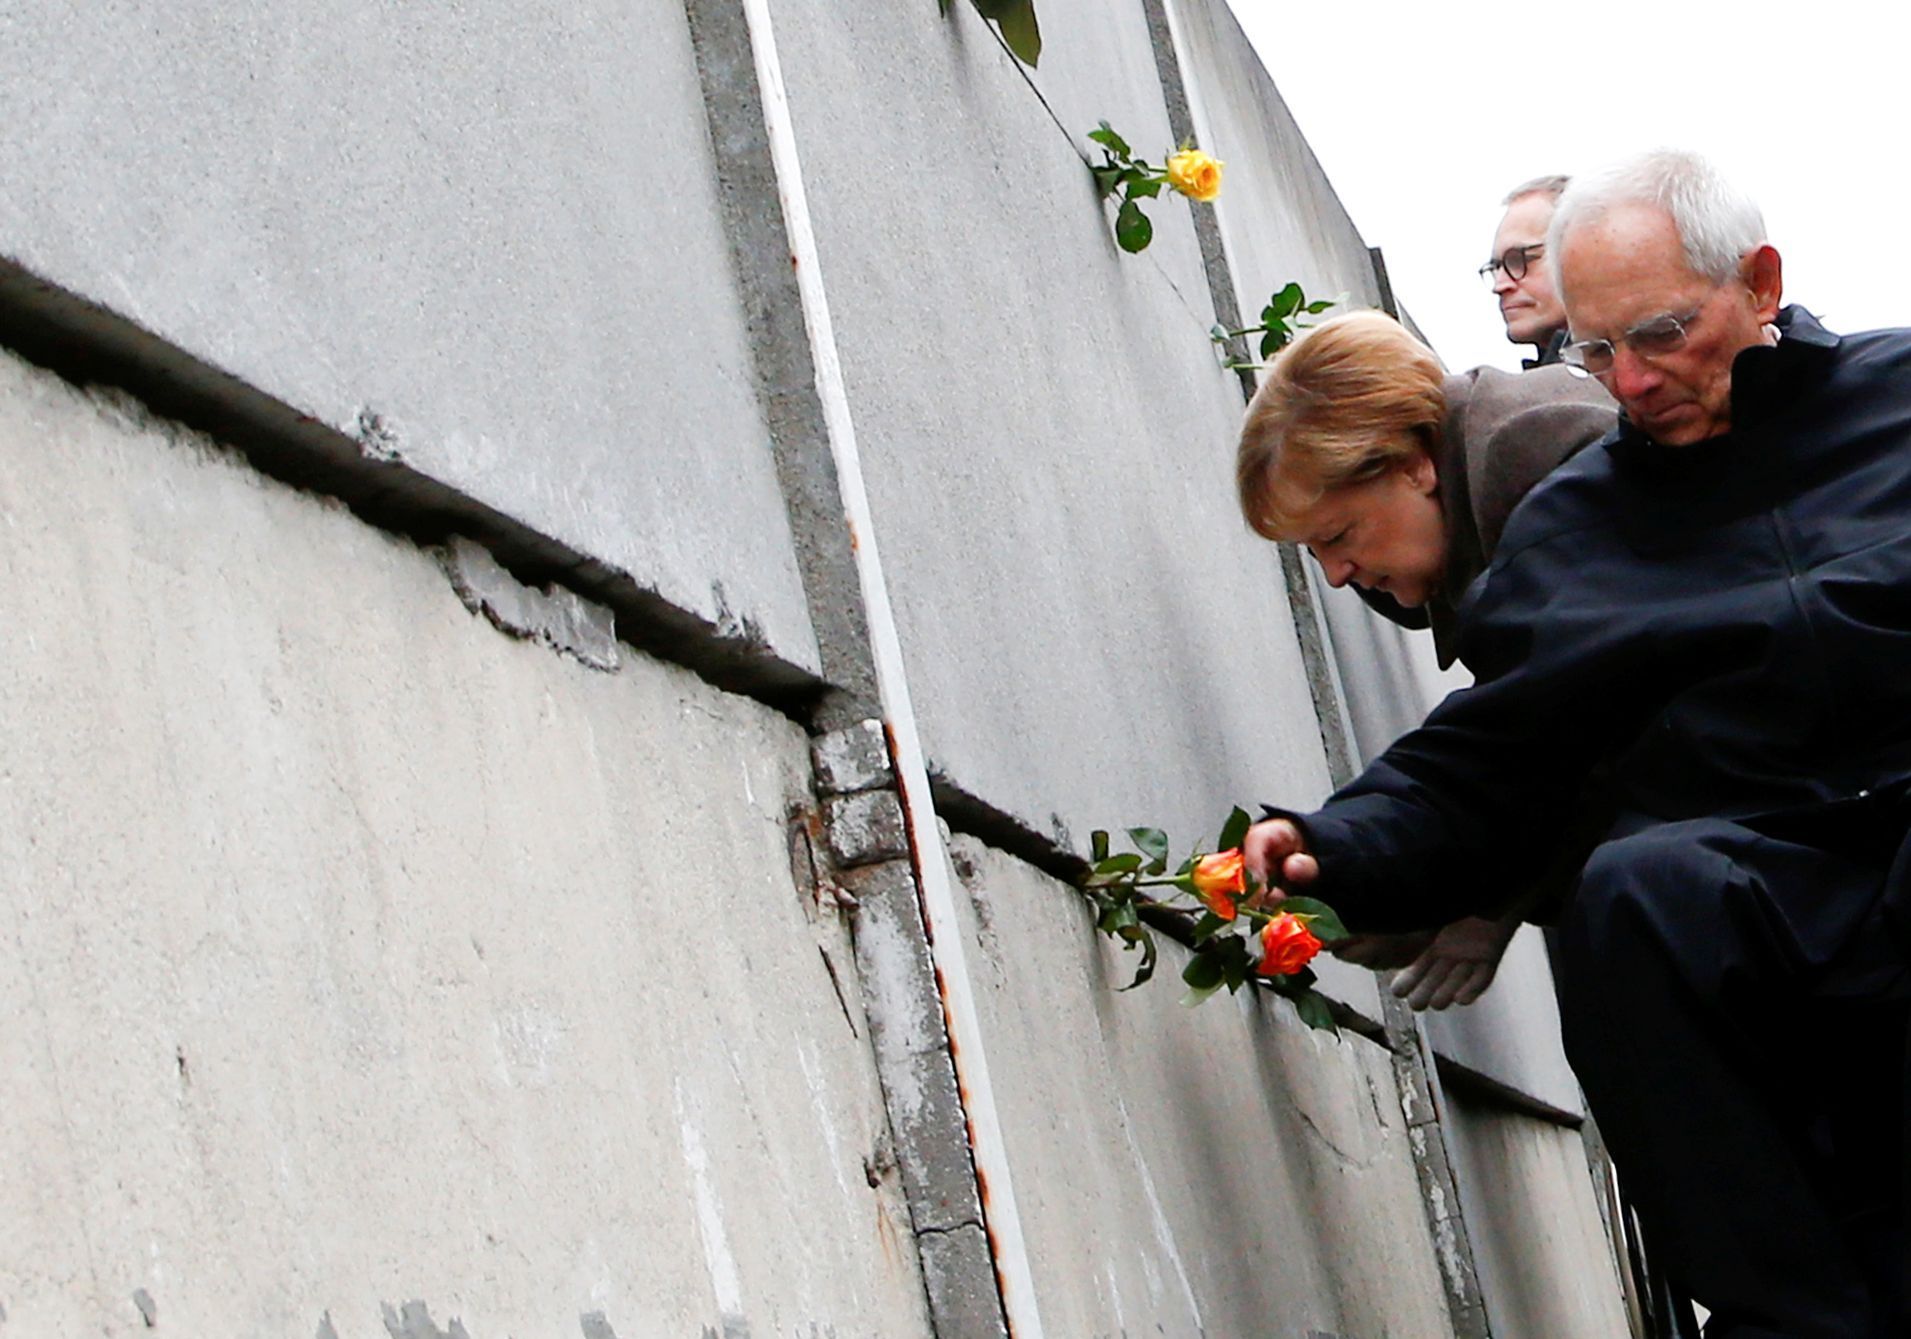 Oslavy 30. výročí pádu berlínské zdi